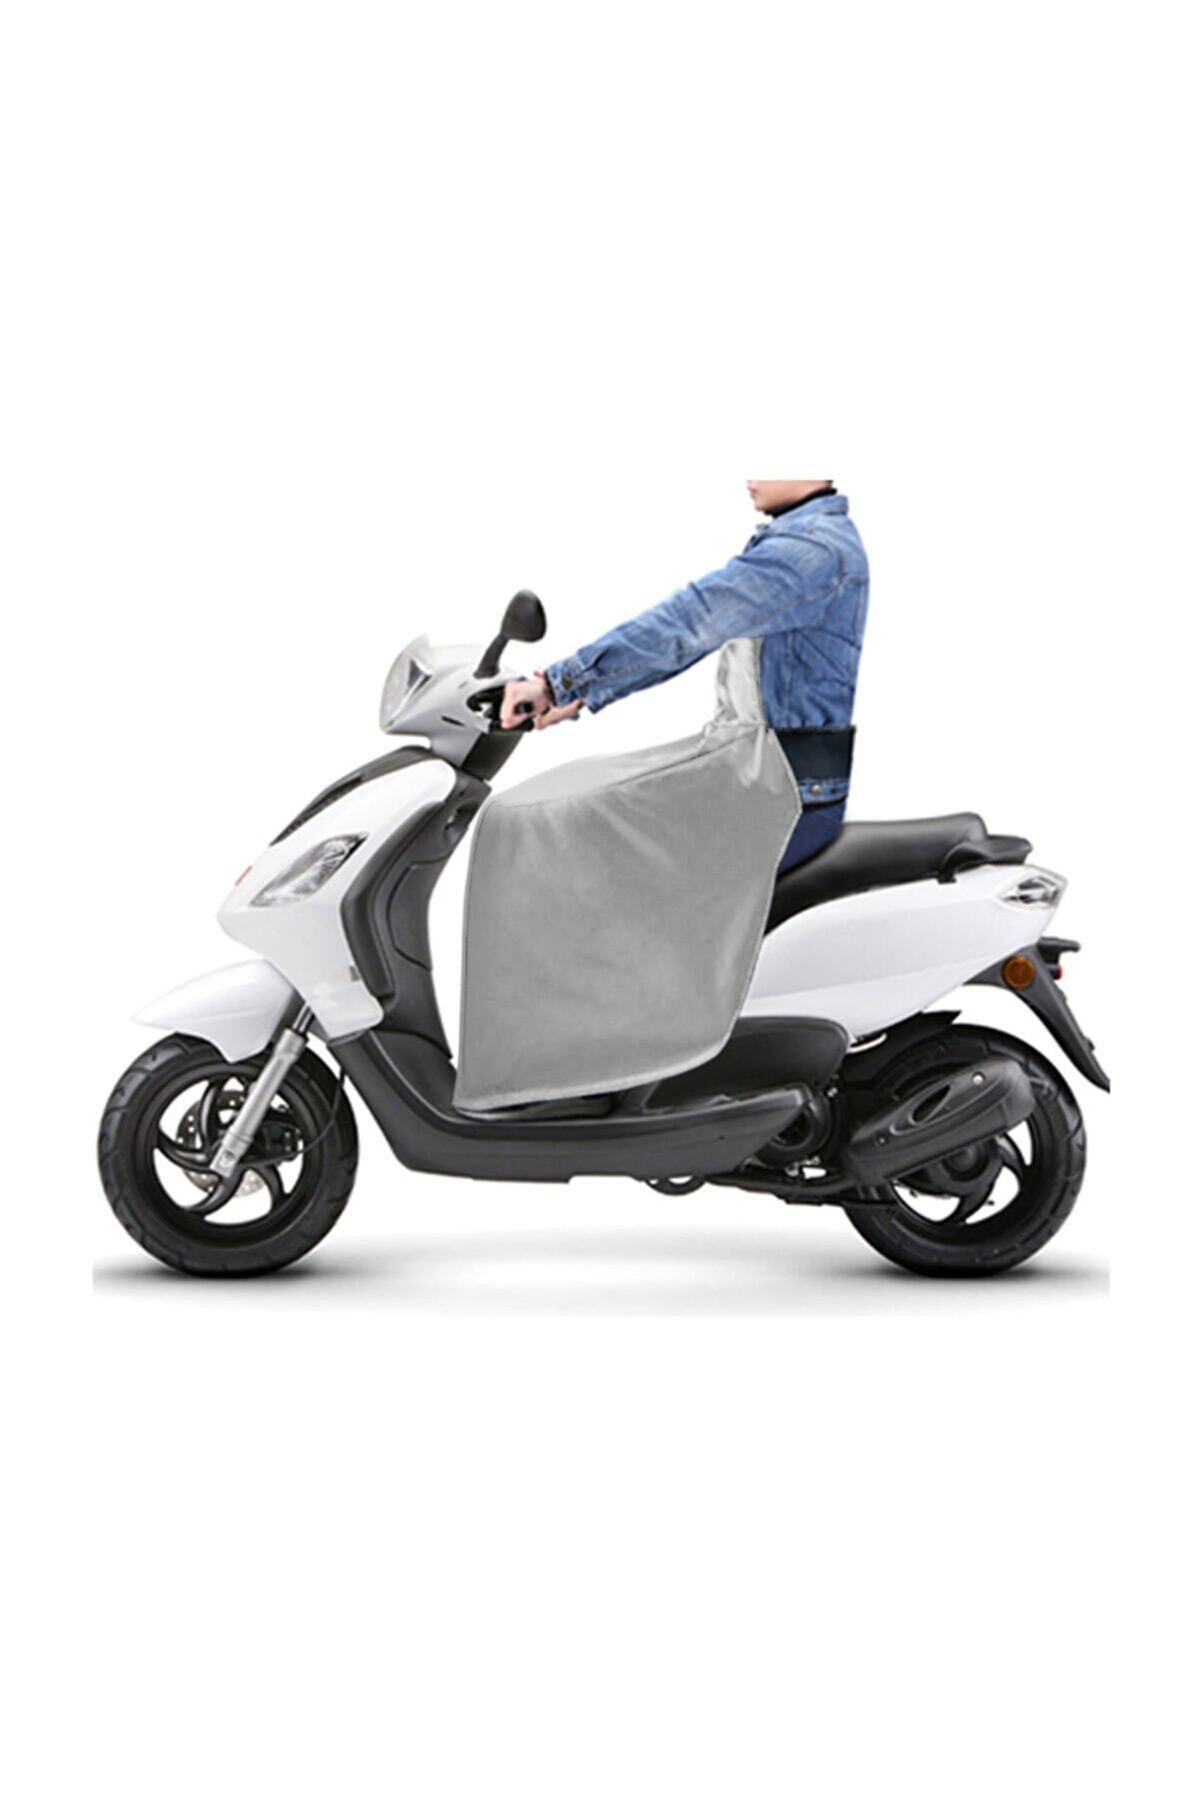 Bundeba Scooter Diz Koruma Örtüsü Motorsiklet Dizlik Yağmur Soğuk Rüzgar Önleyici Örtü Rüzgarlık Gri